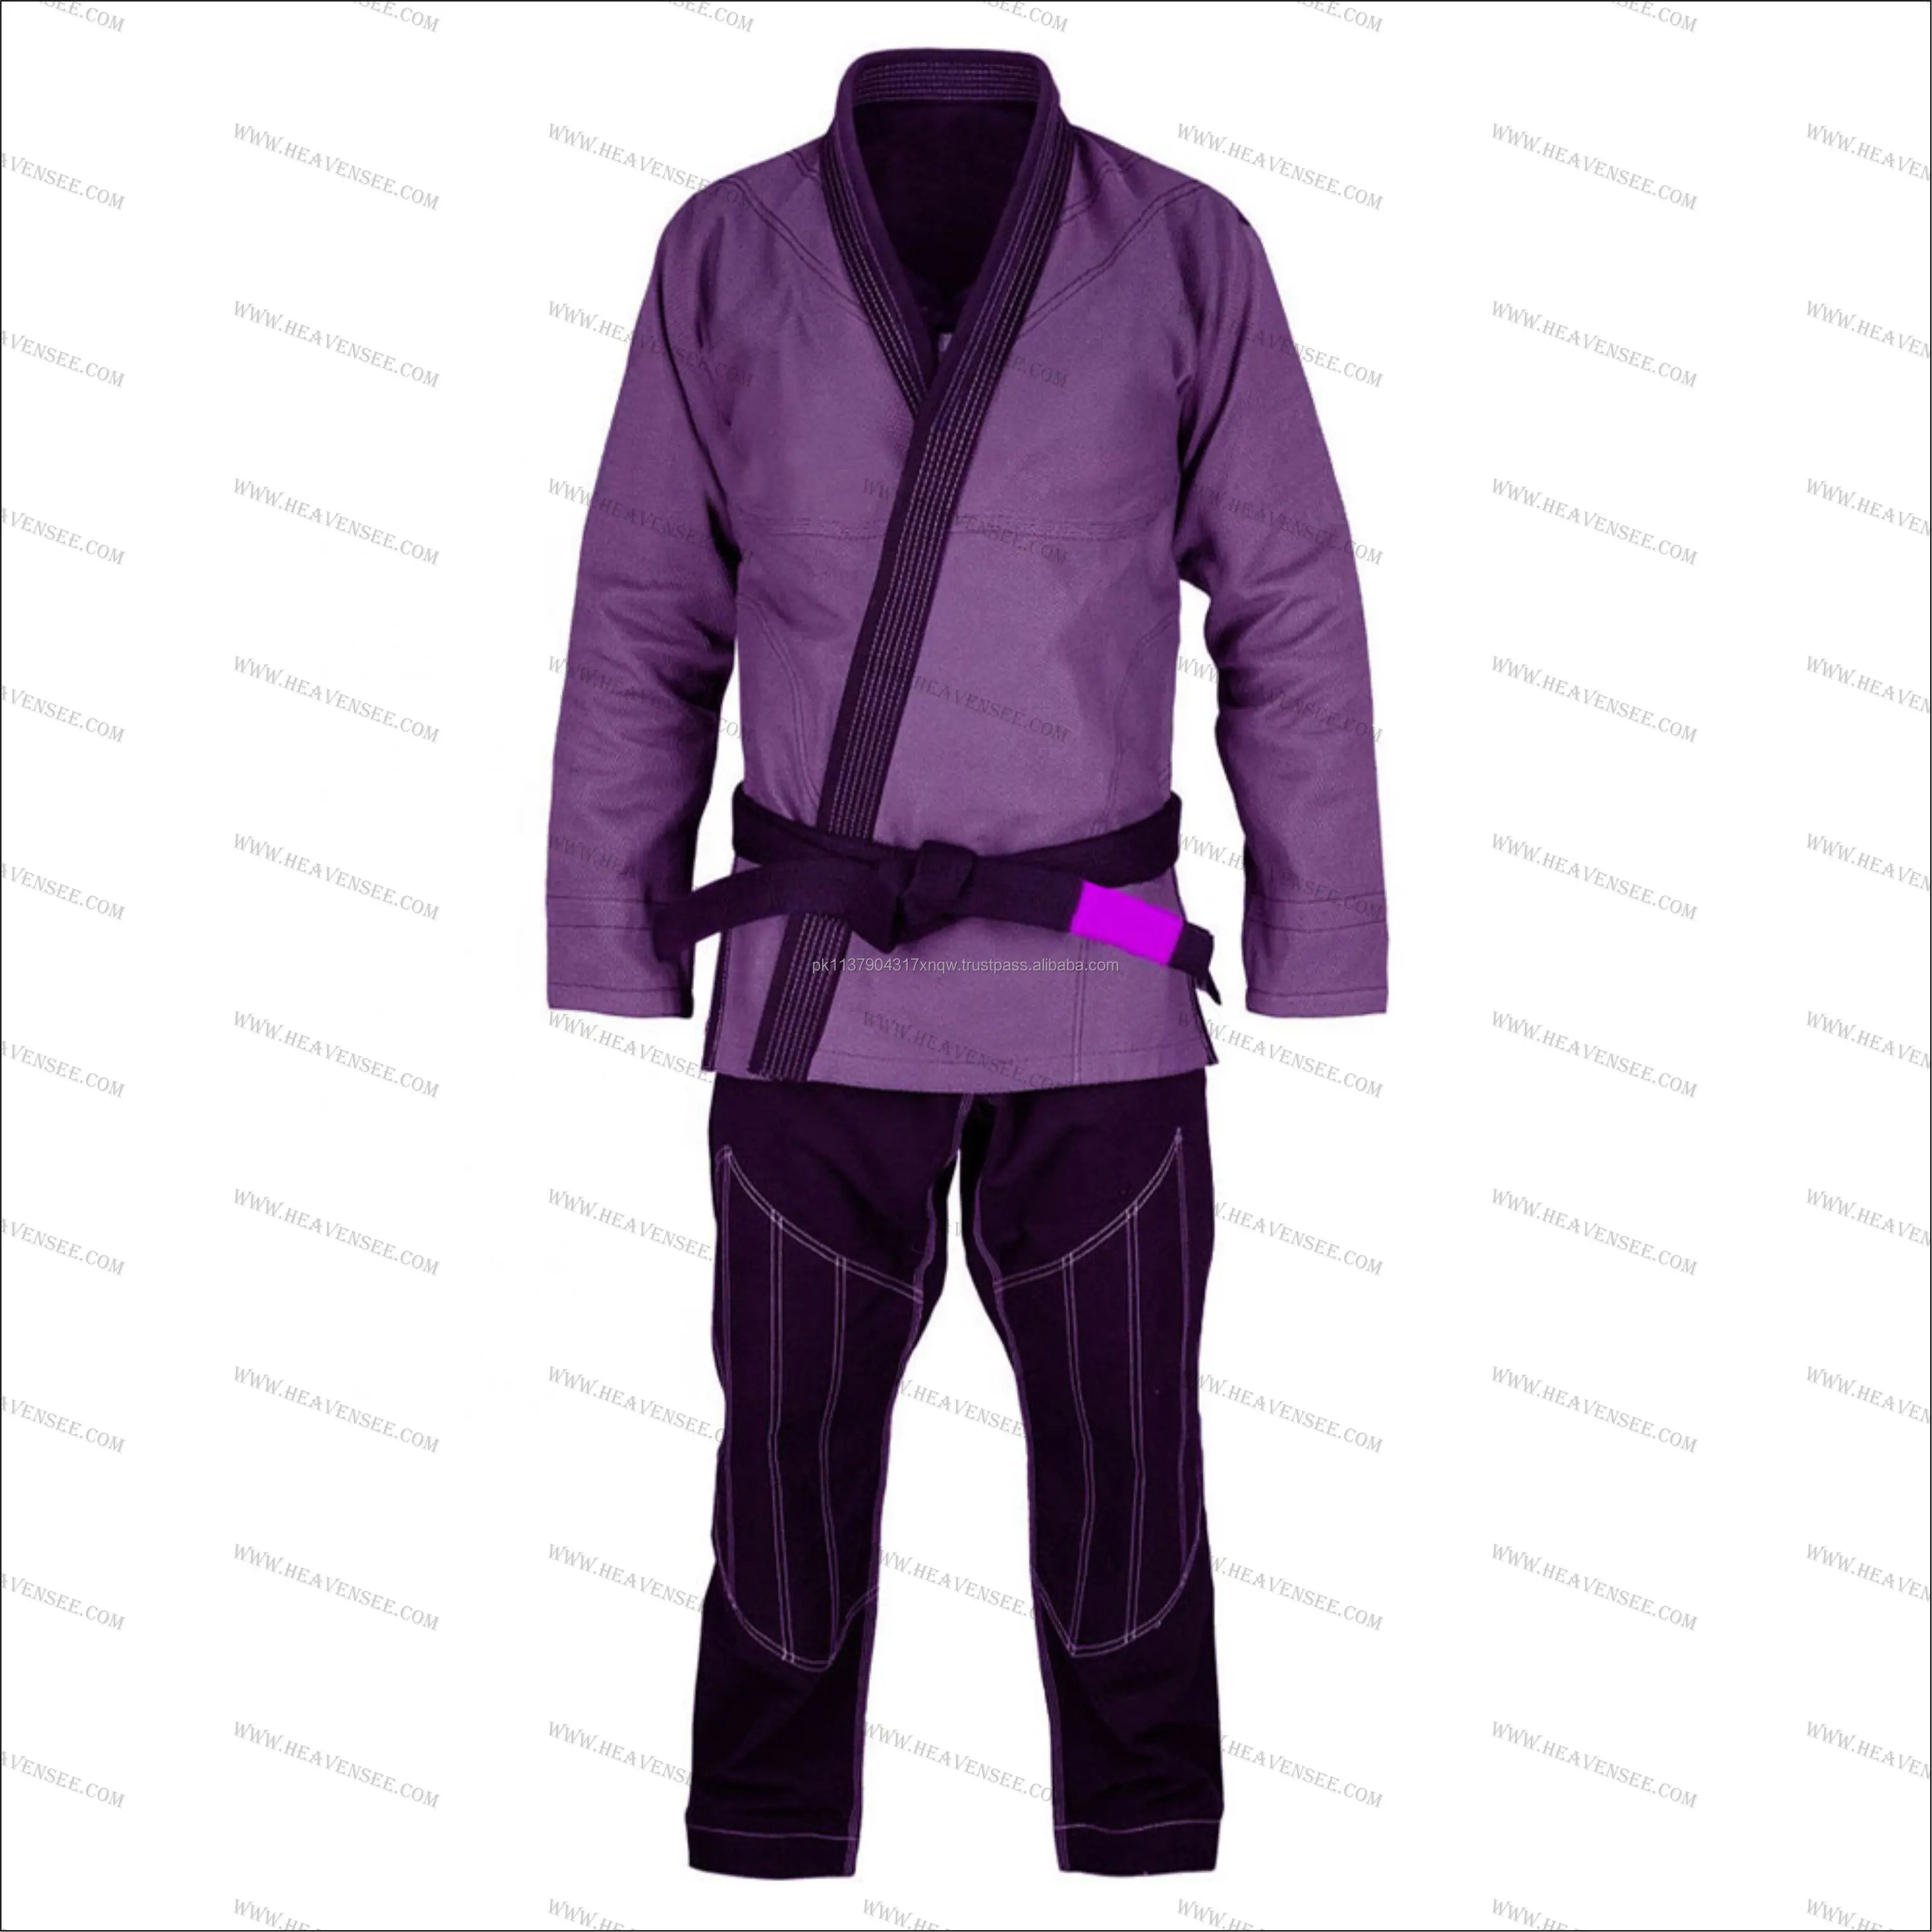 Source Brazilian Jiu Jitsu Gi Bjj Gi/Kimono Arts Uniform on